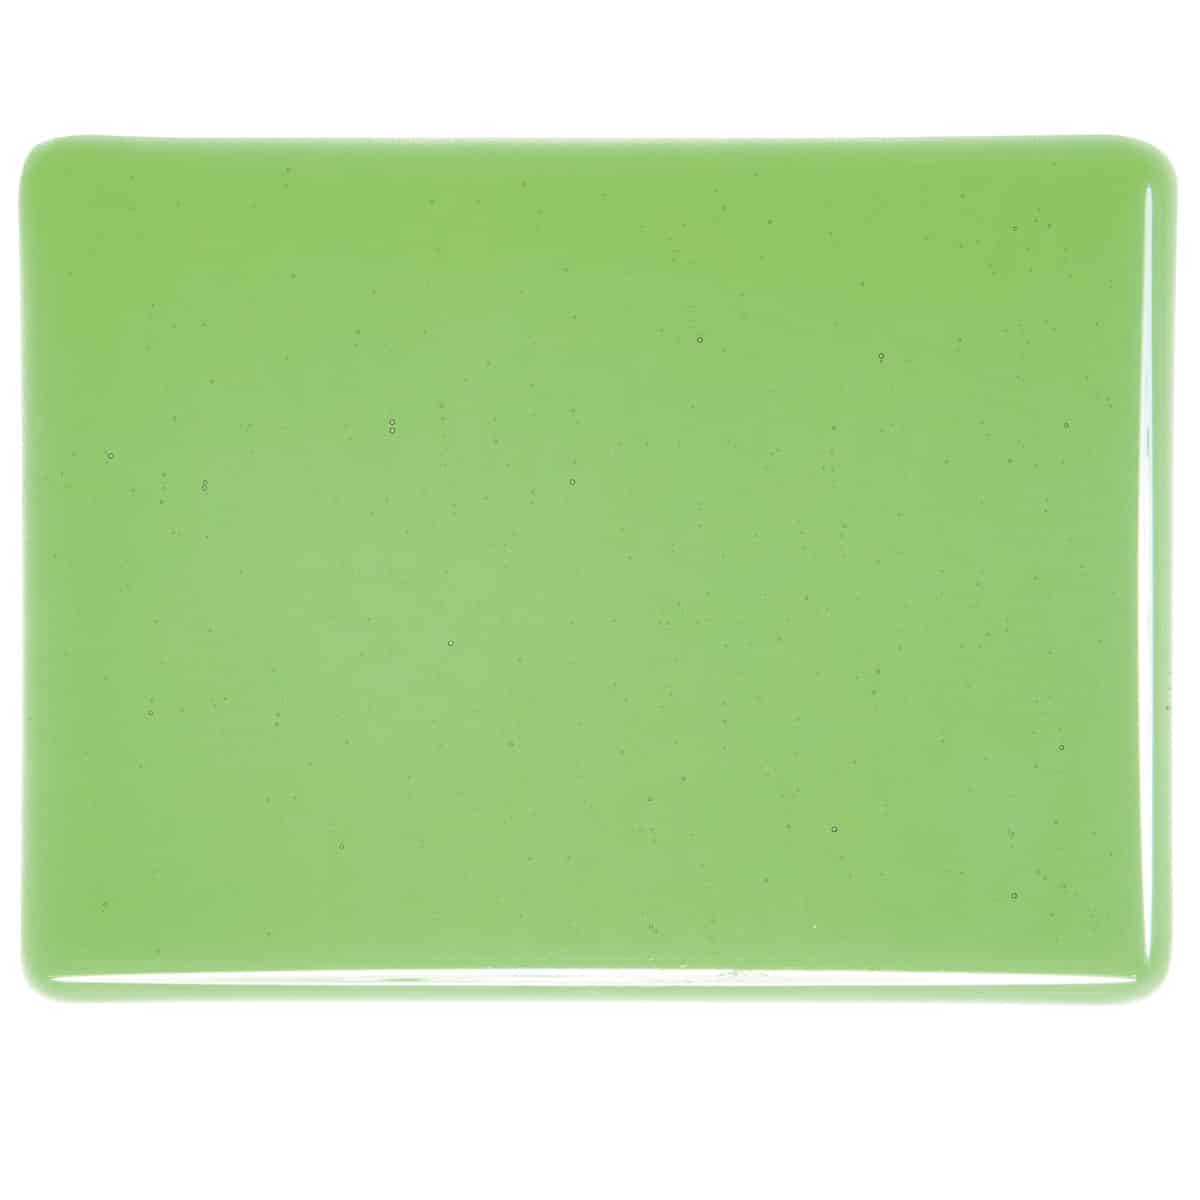 001107 Transparent Light Green sheet glass swatch